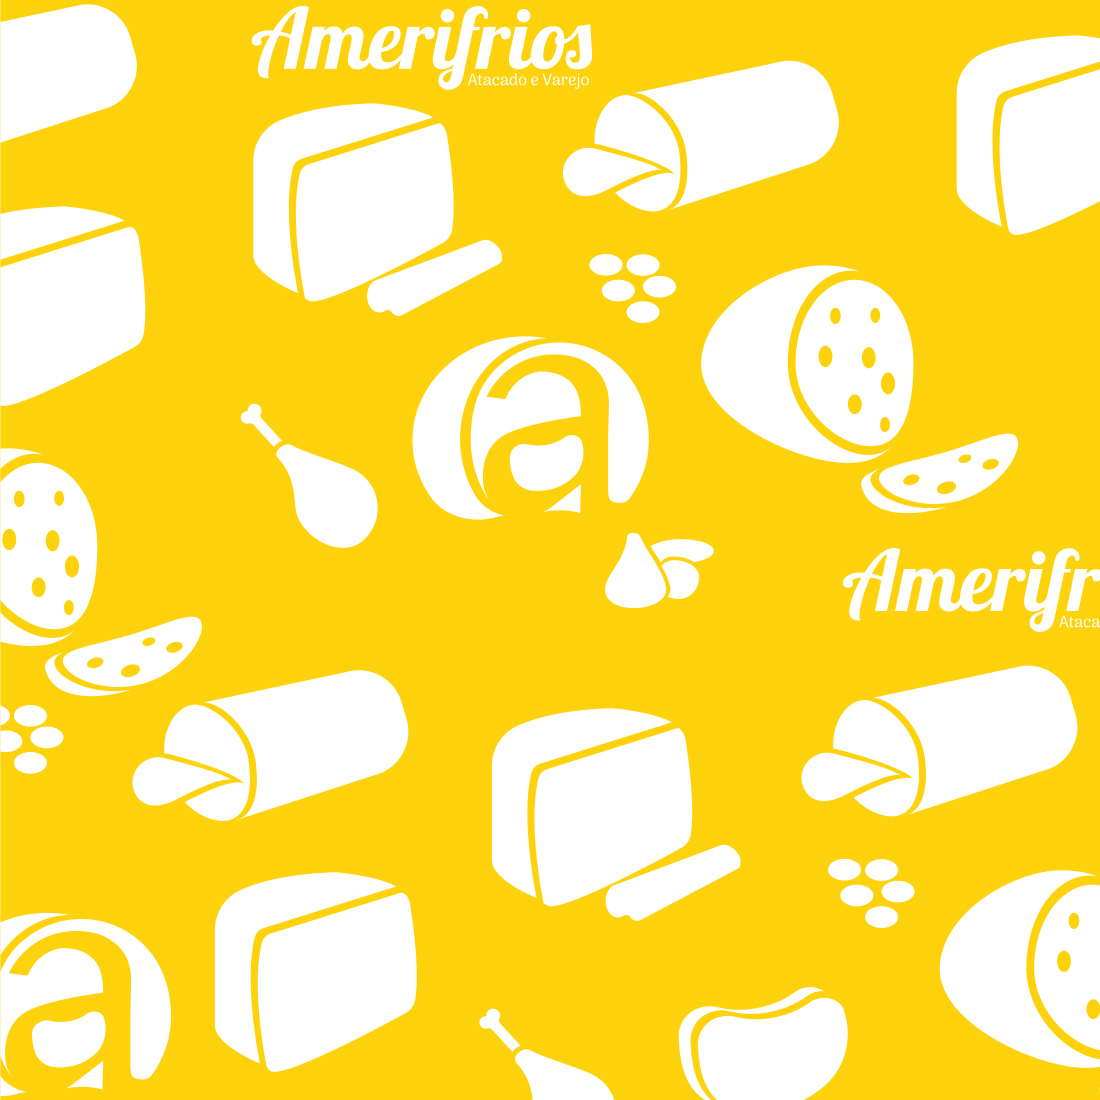 icones-amerifrios-amarelo